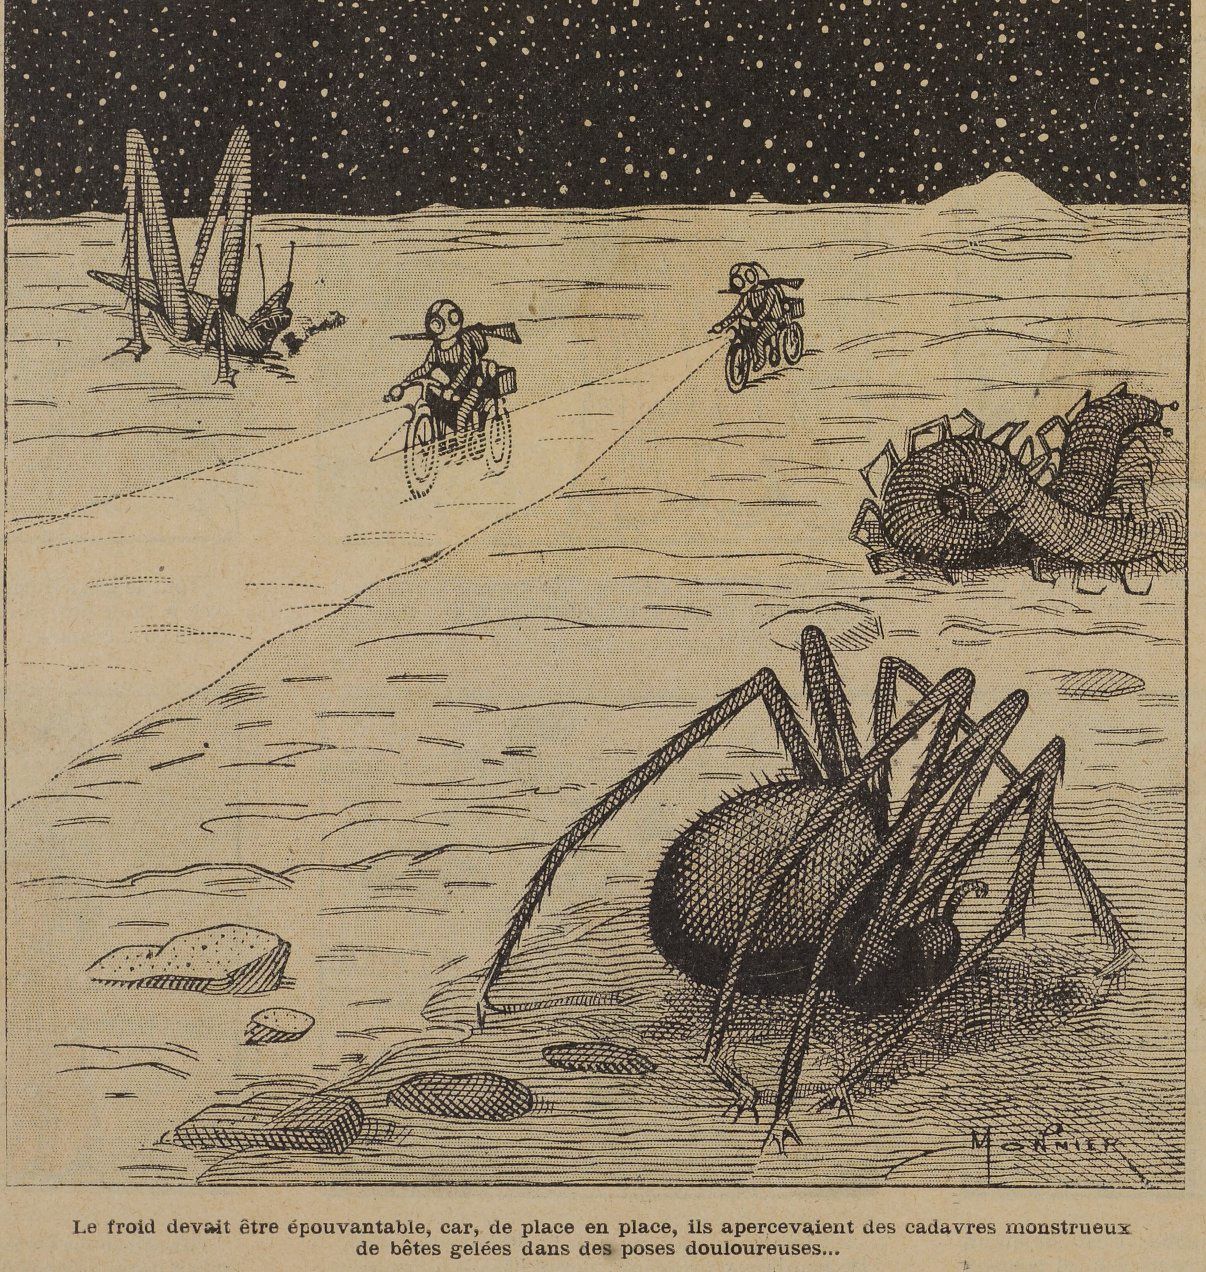 Marius Monnier - A quatre-vingt dix mille lieues de la Terre in La Jeunesse illustrée n°188 (30/09/1906)